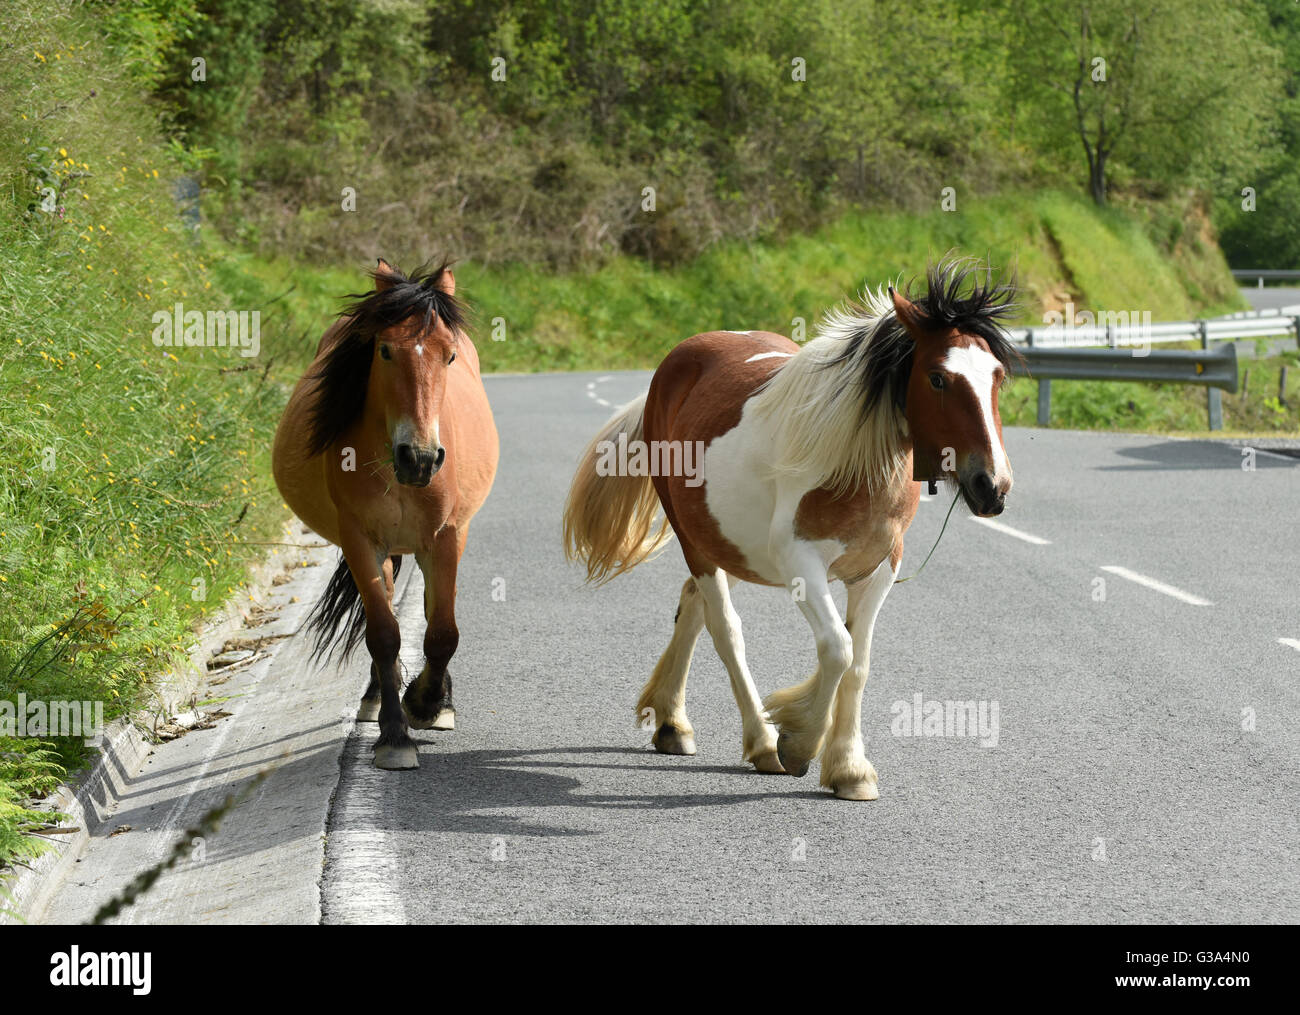 Los caballos con cuello de roaming de campanas la carretera cerca de Bera Bidasoa, en la Comunidad Autónoma del País Vasco y la frontera francesa. Foto de stock